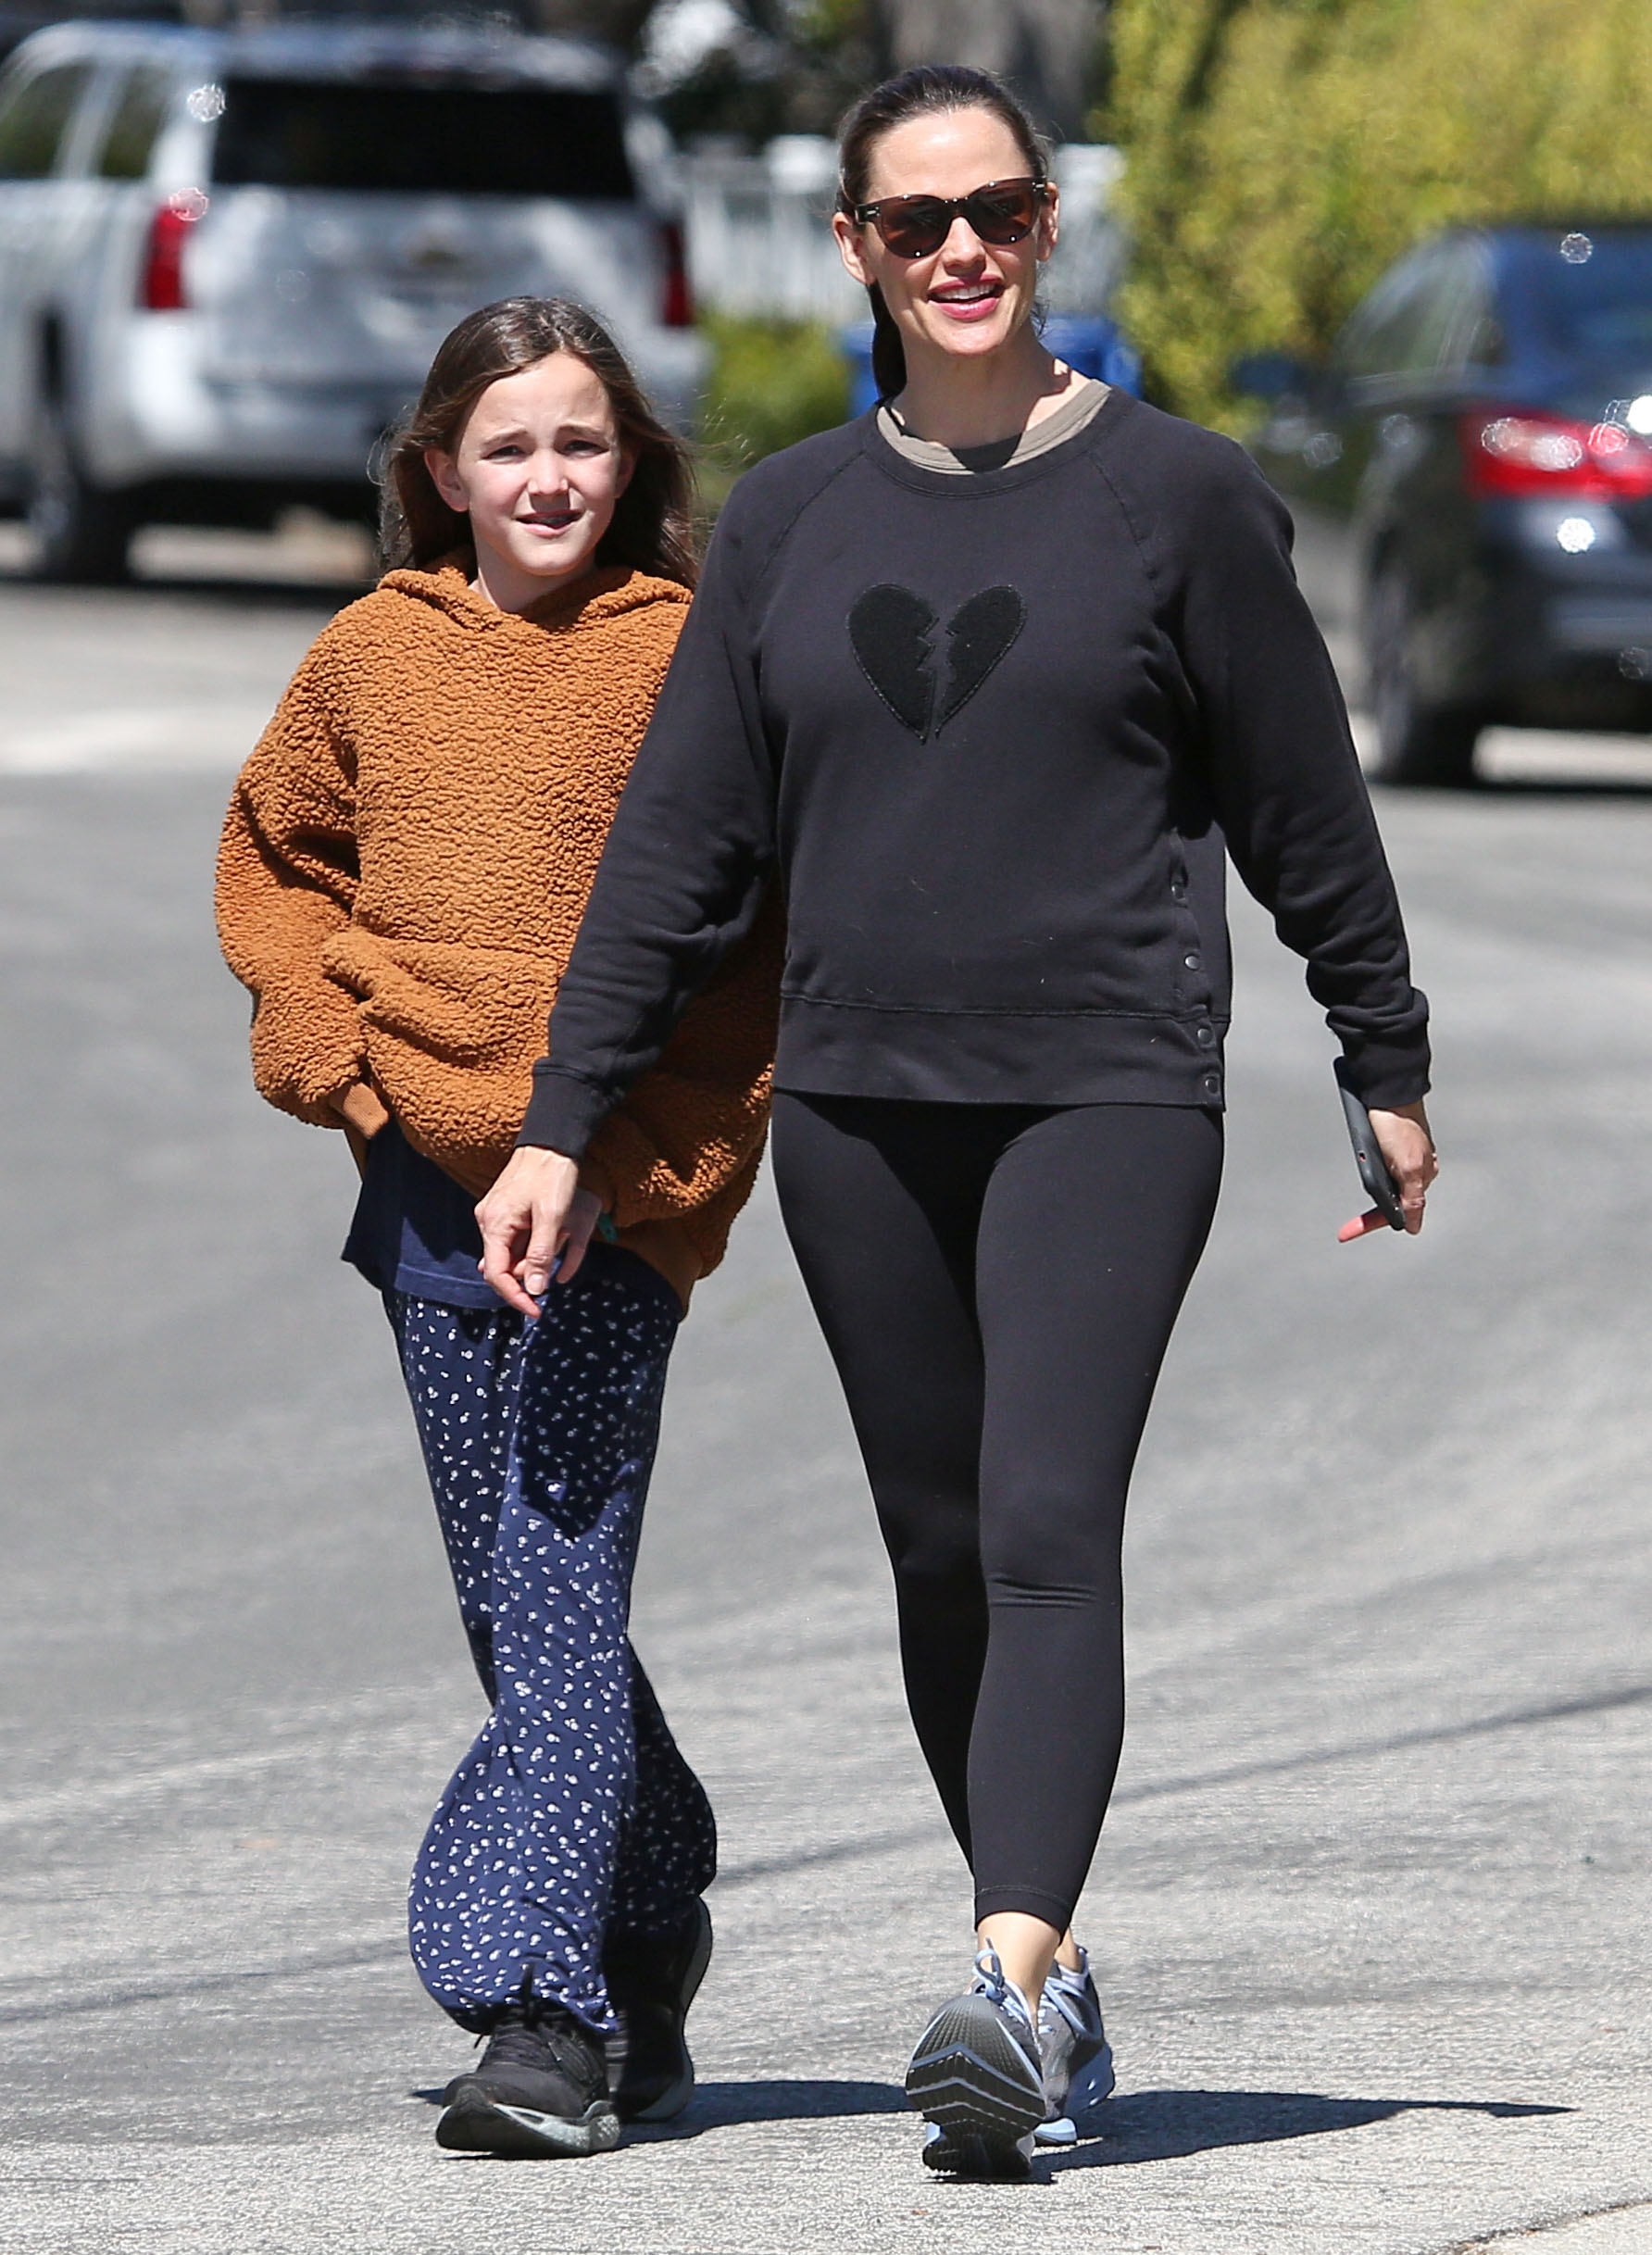 Jennifer Garner and Seraphina Affleck Hold Hands on Walk in Brentwood